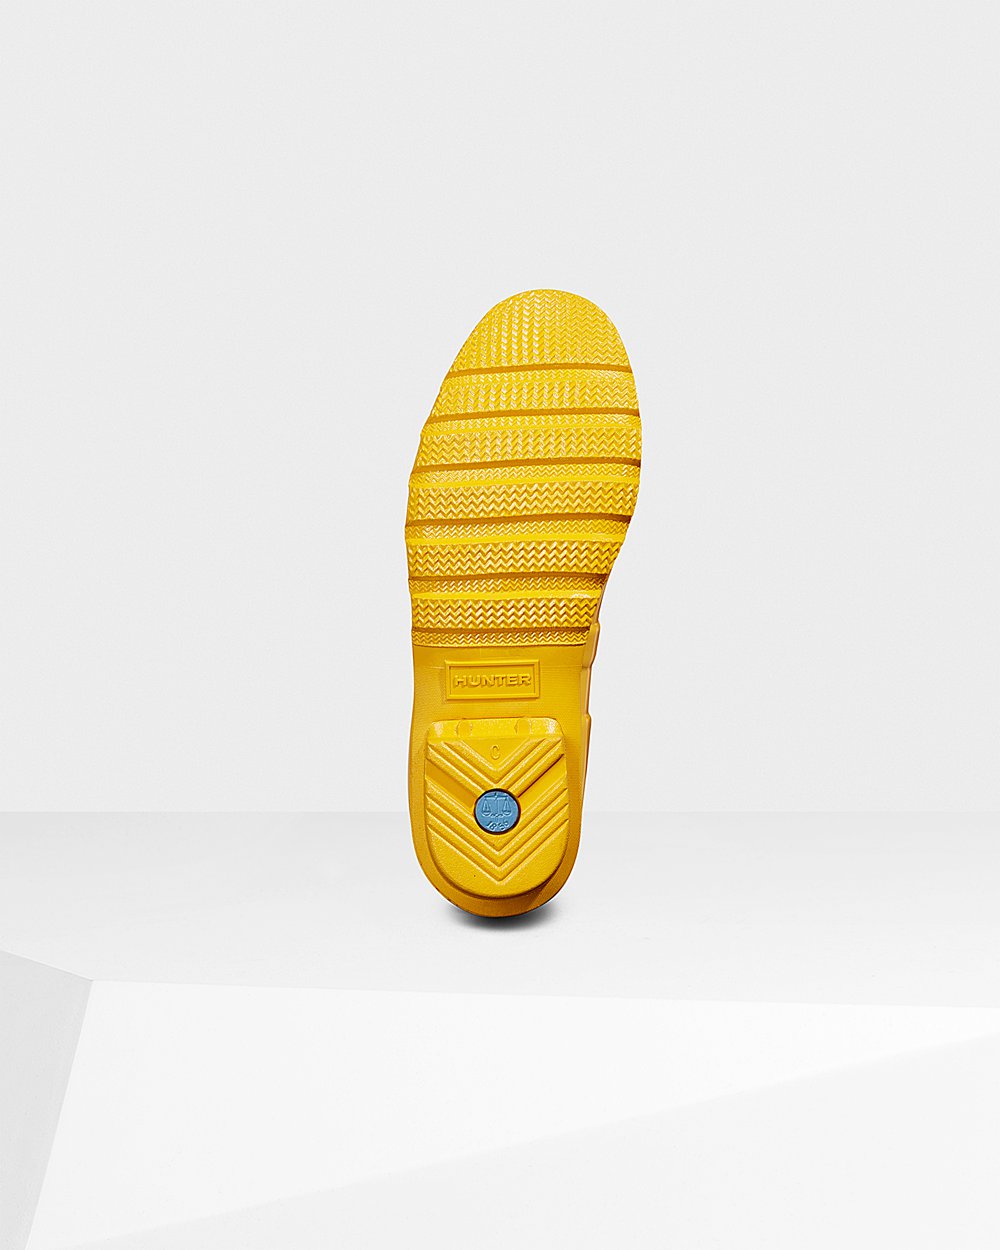 Womens Tall Rain Boots - Hunter Original Gloss (84OWKHJGR) - Yellow